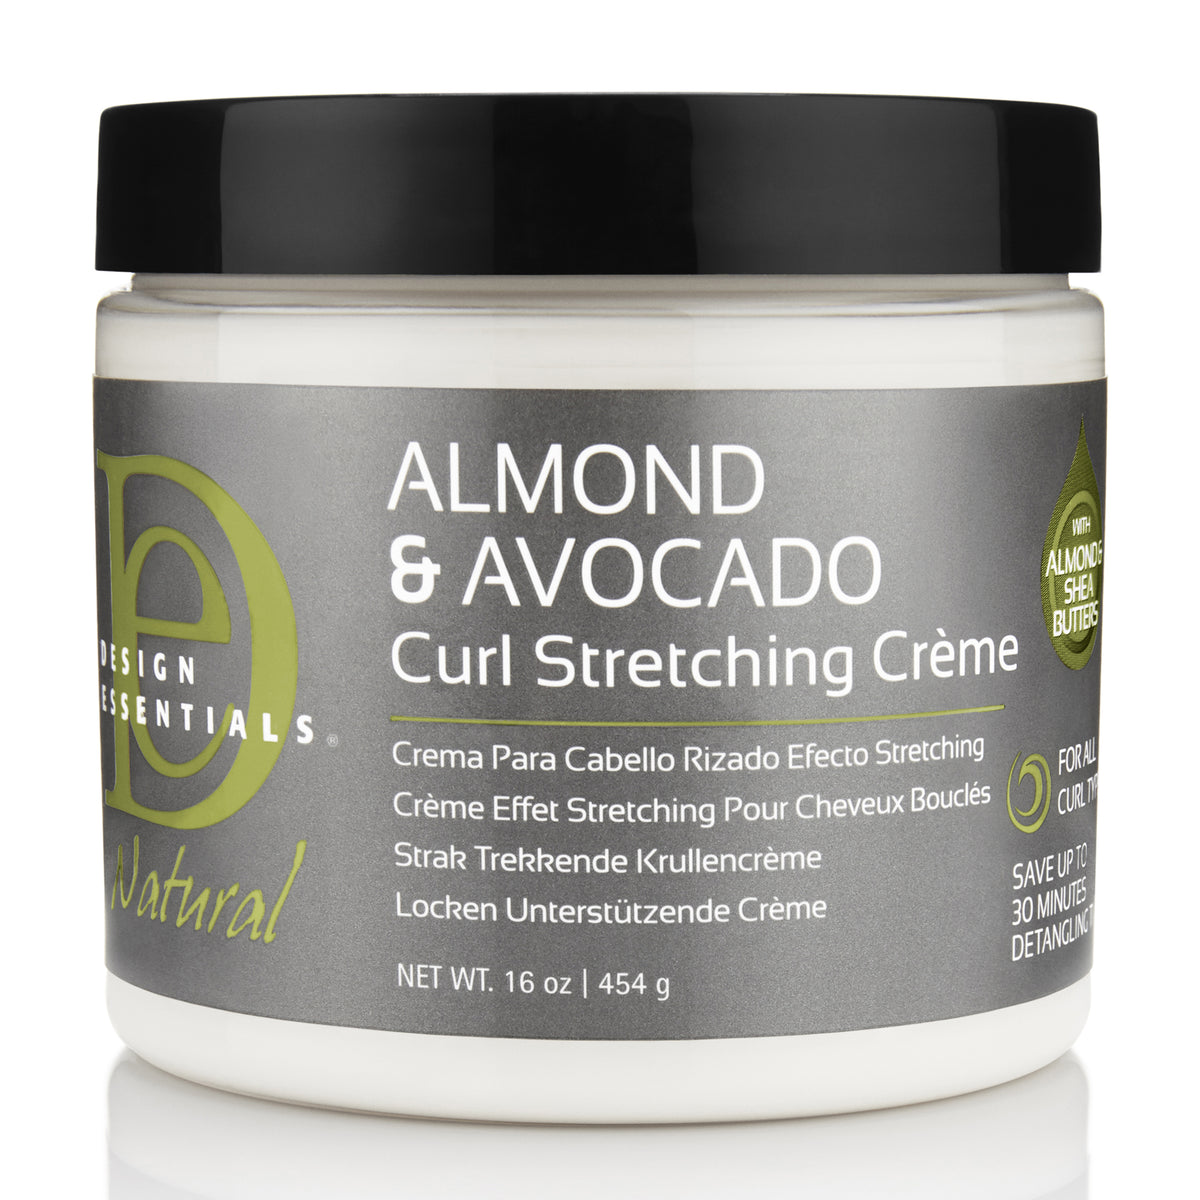 Design Essentials - Almond & Avocado Curl Stretching Cream (Crème coiffante)